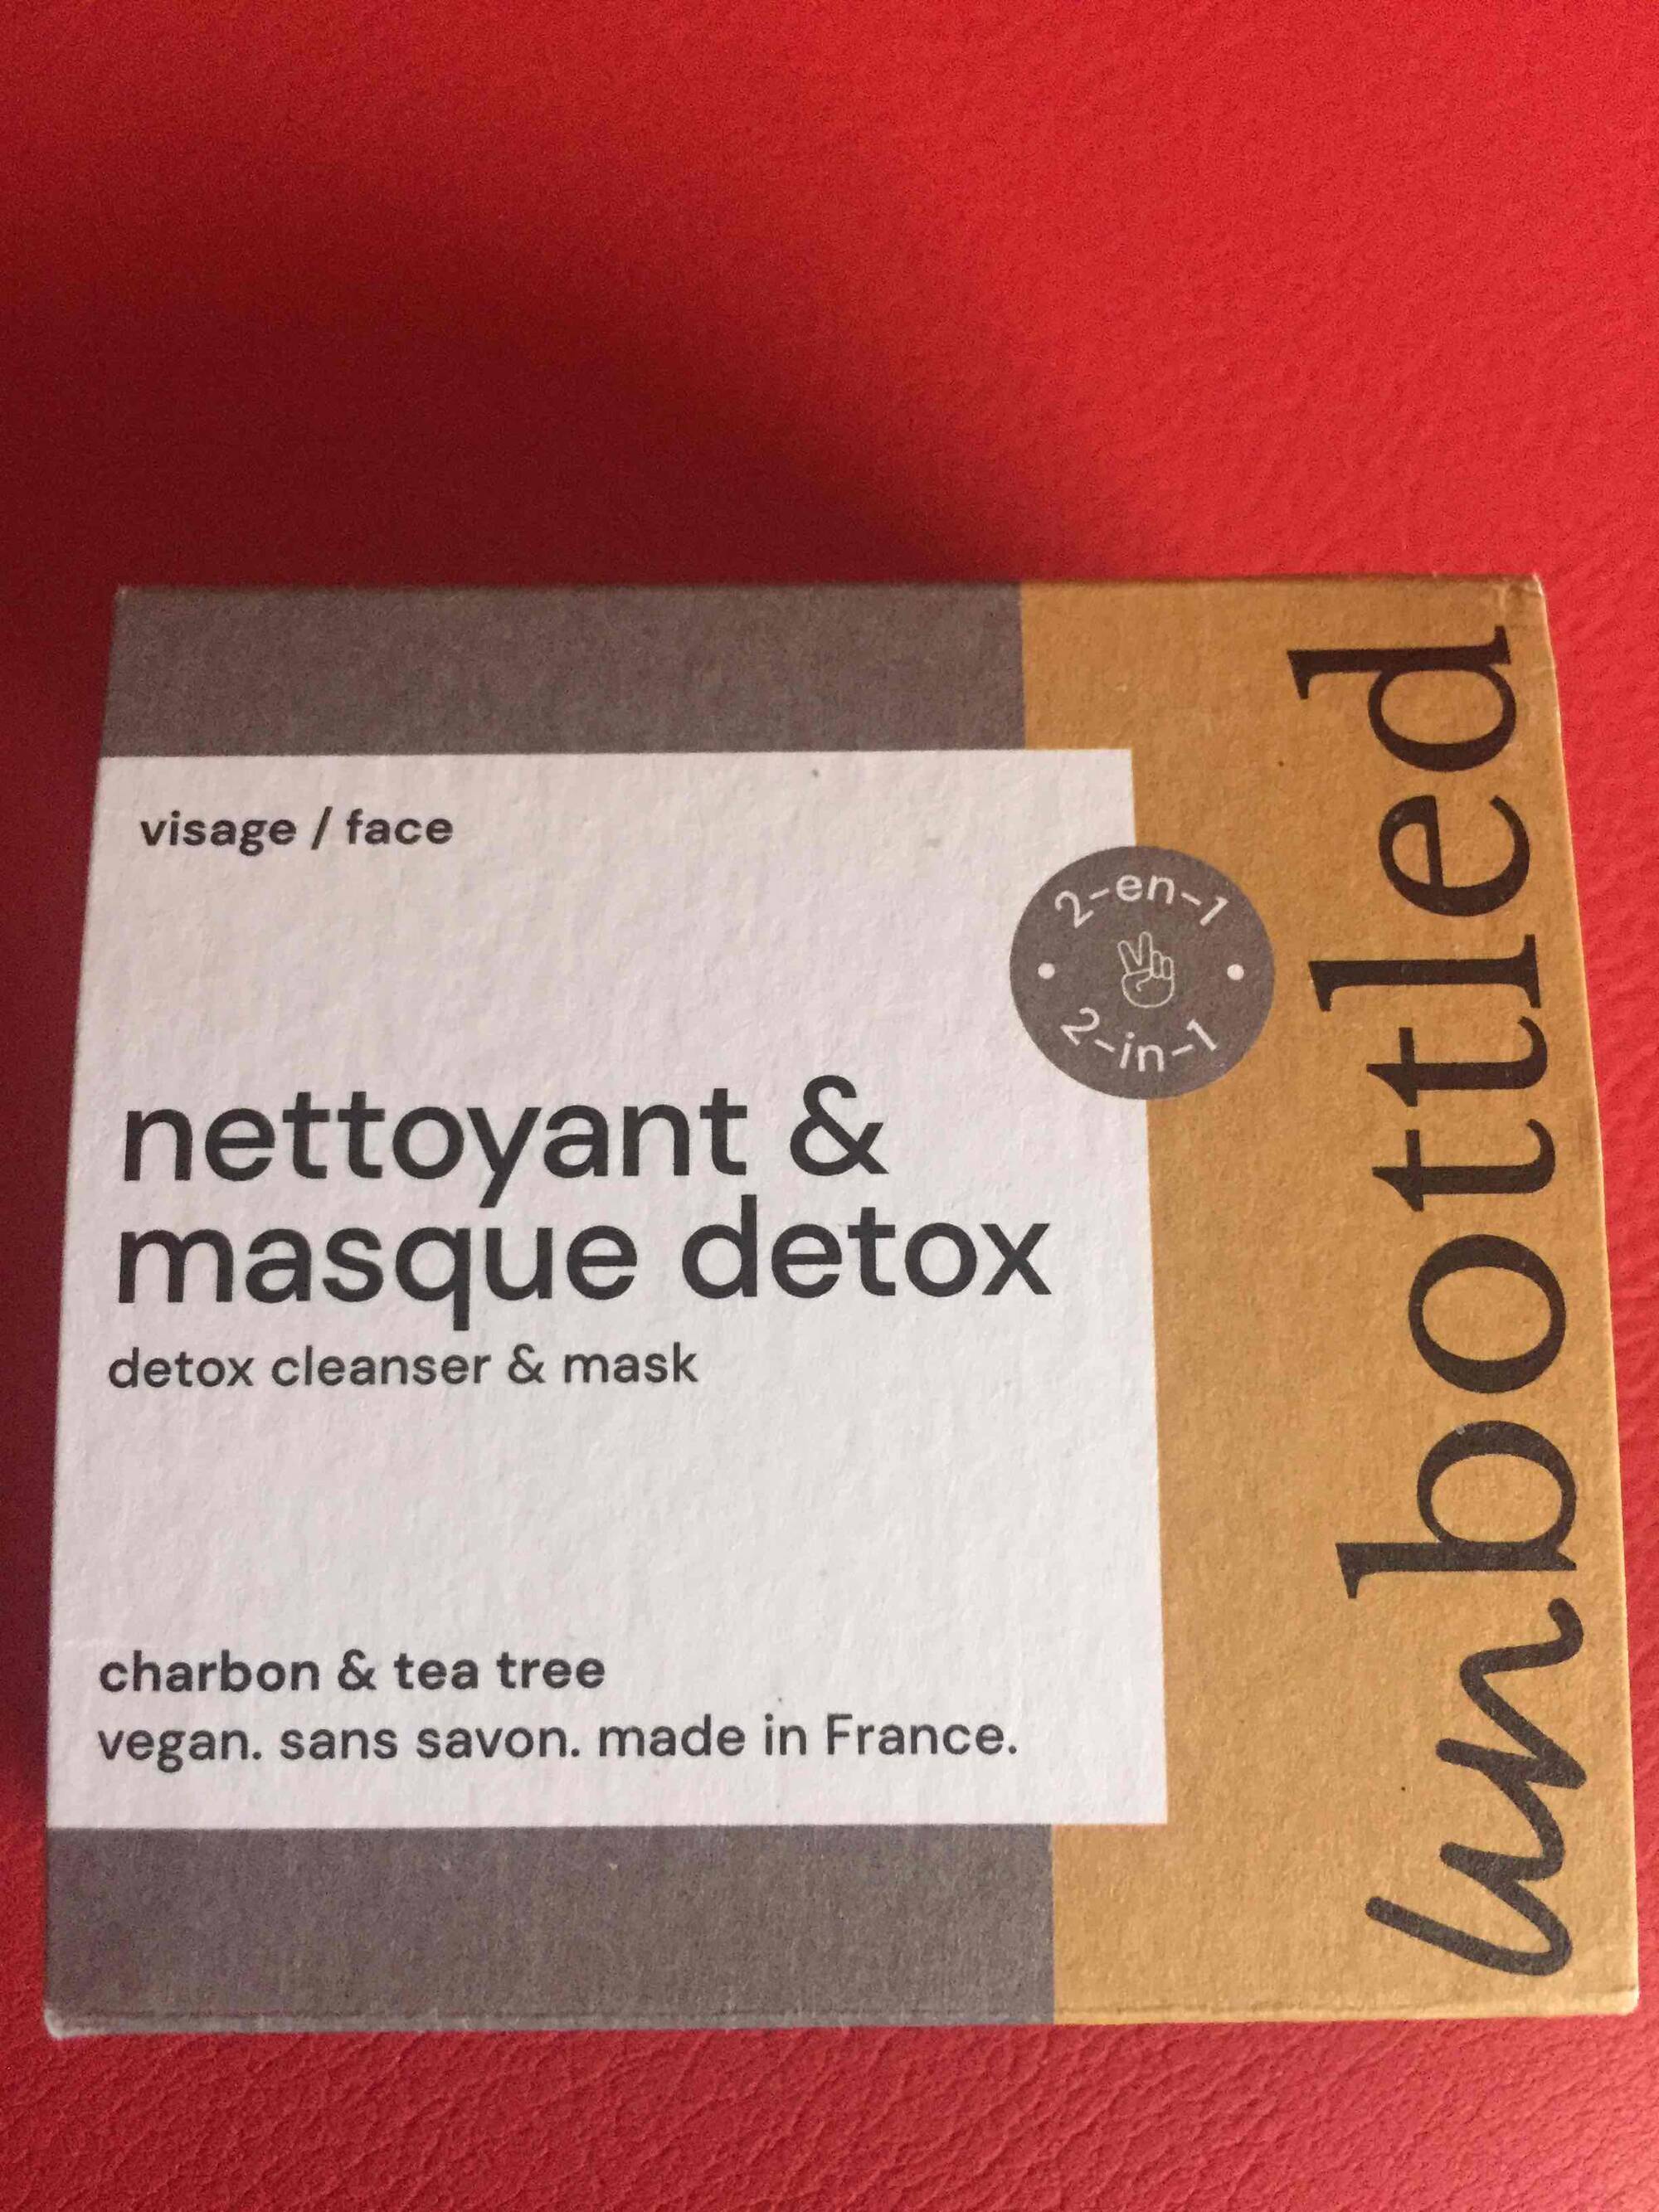 UN BOTTLED - Nettoyant & masque detox